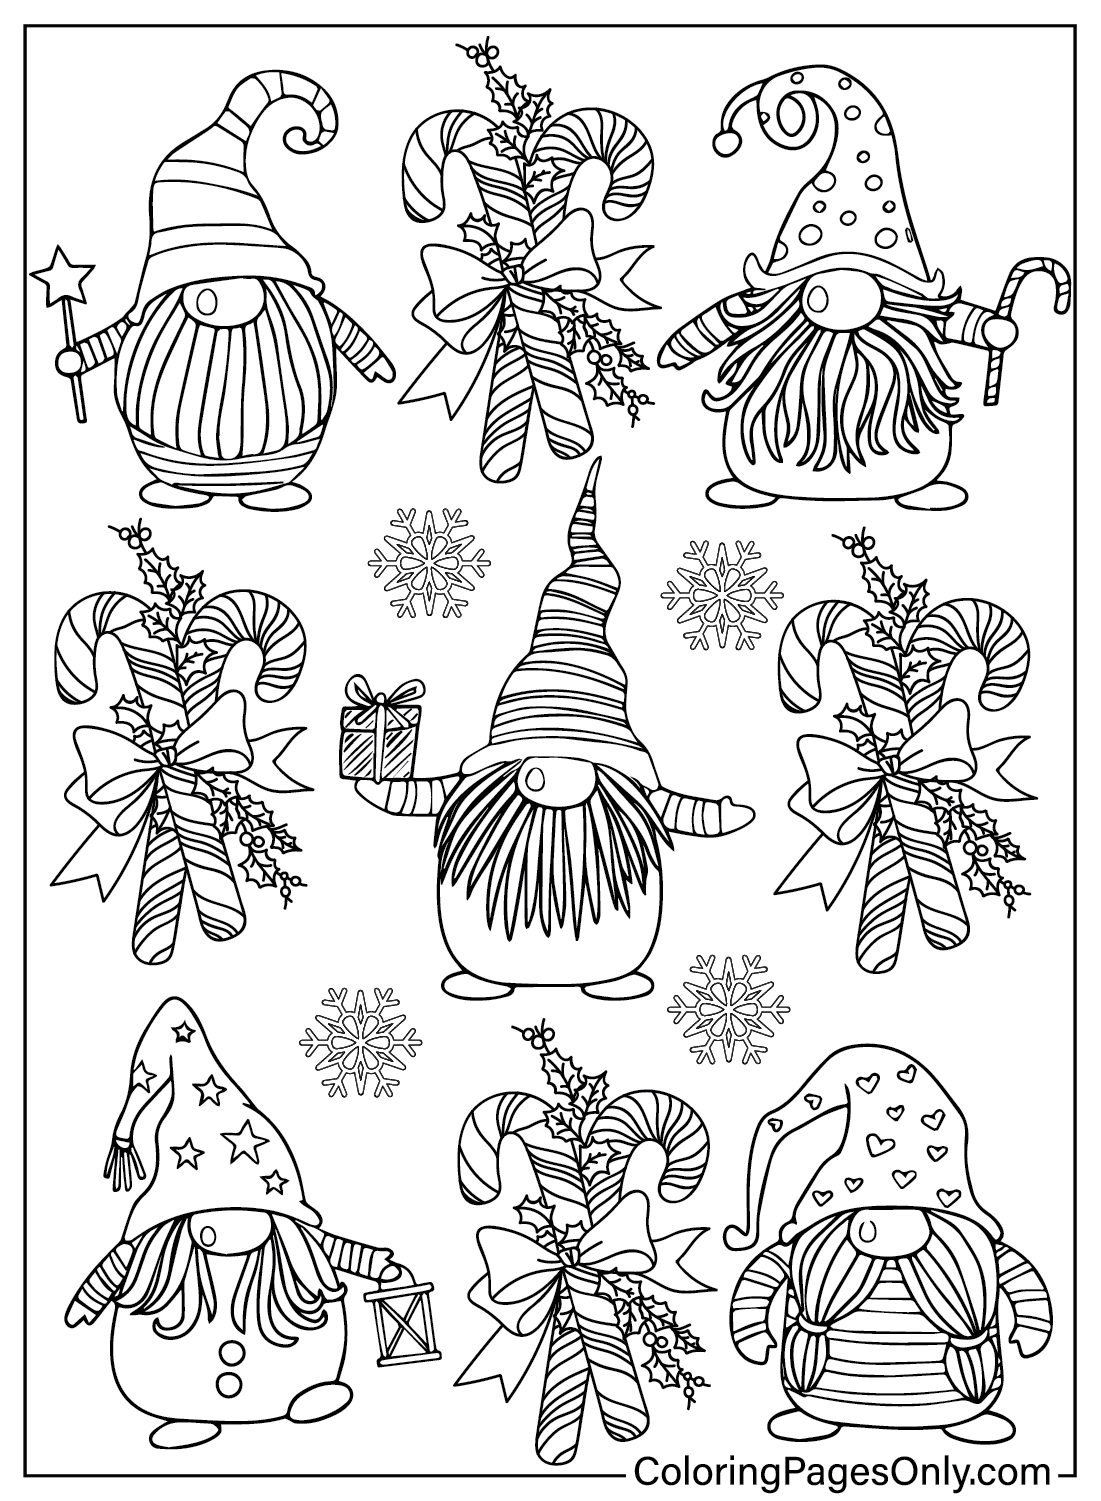 Página para colorir do Gnome para impressão gratuita no Gnome